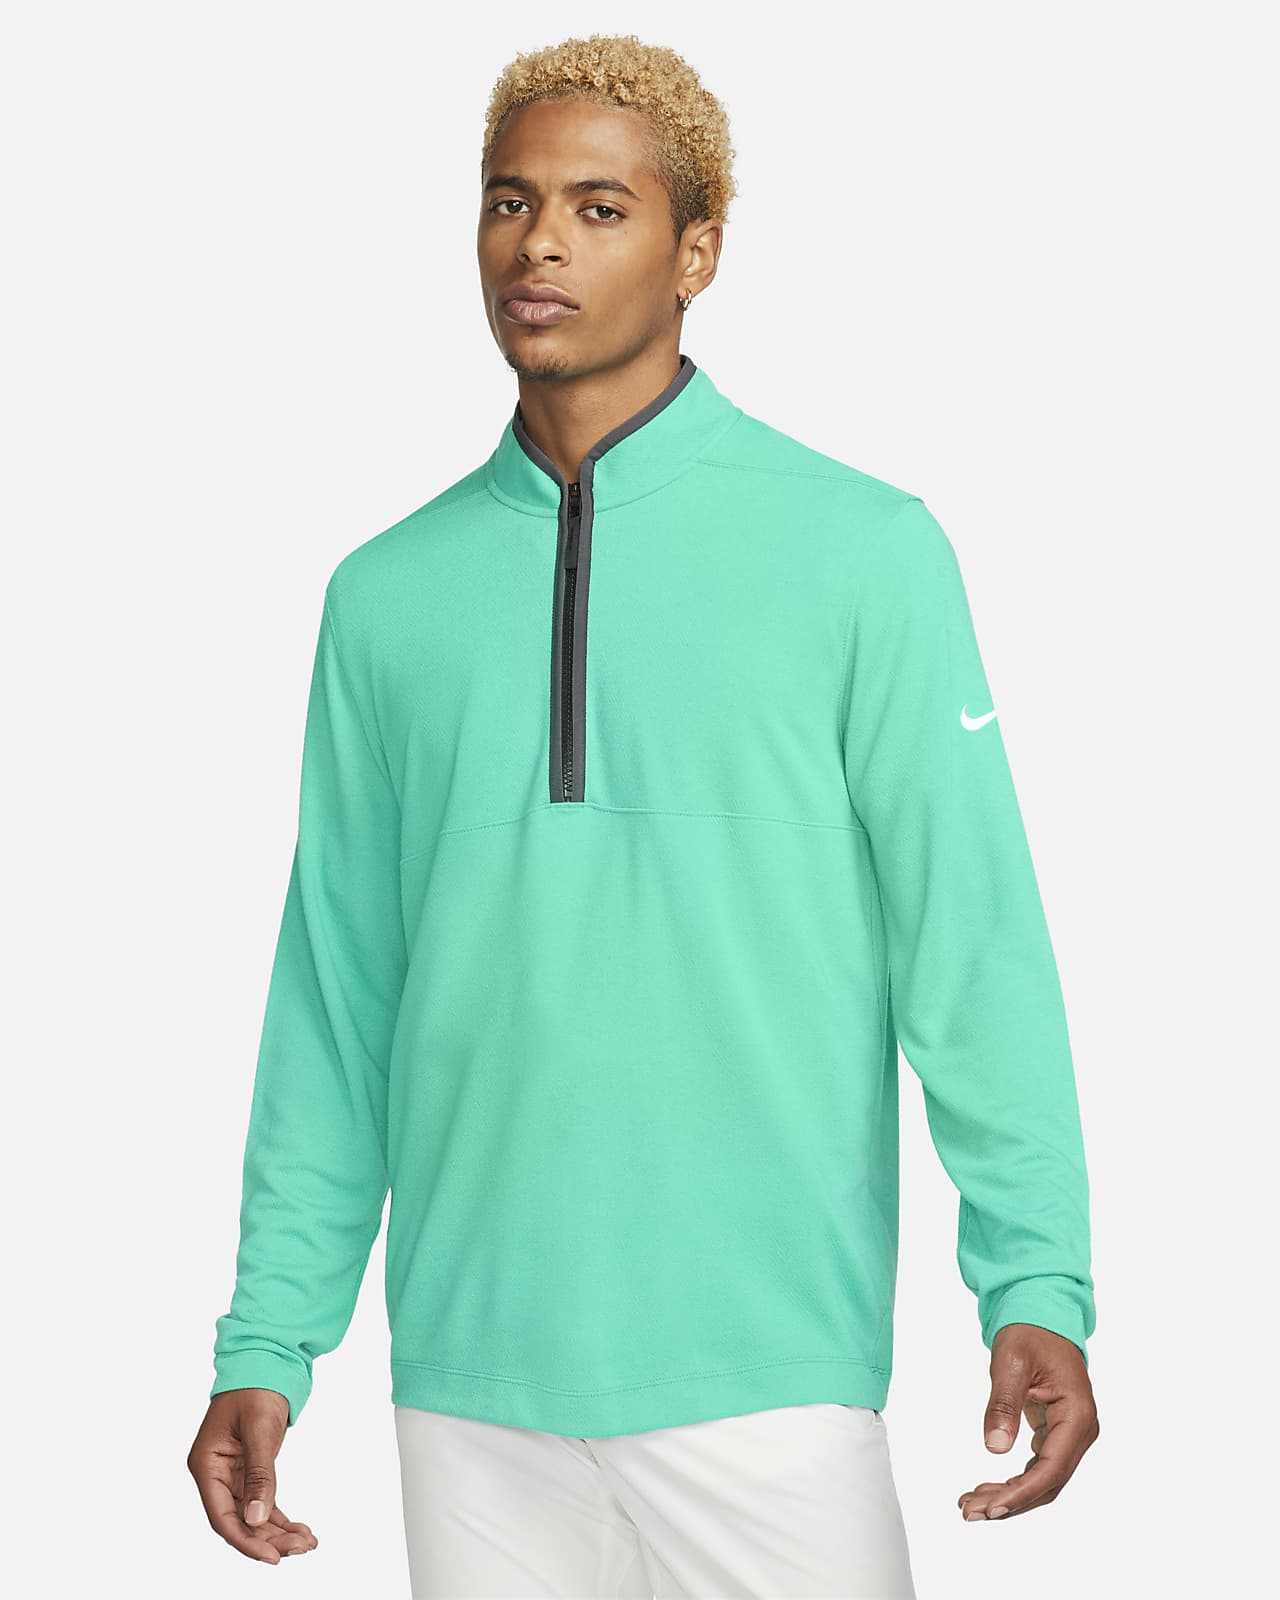 Nike Dri-FIT Men's Half-Zip Golf Top. Nike.com